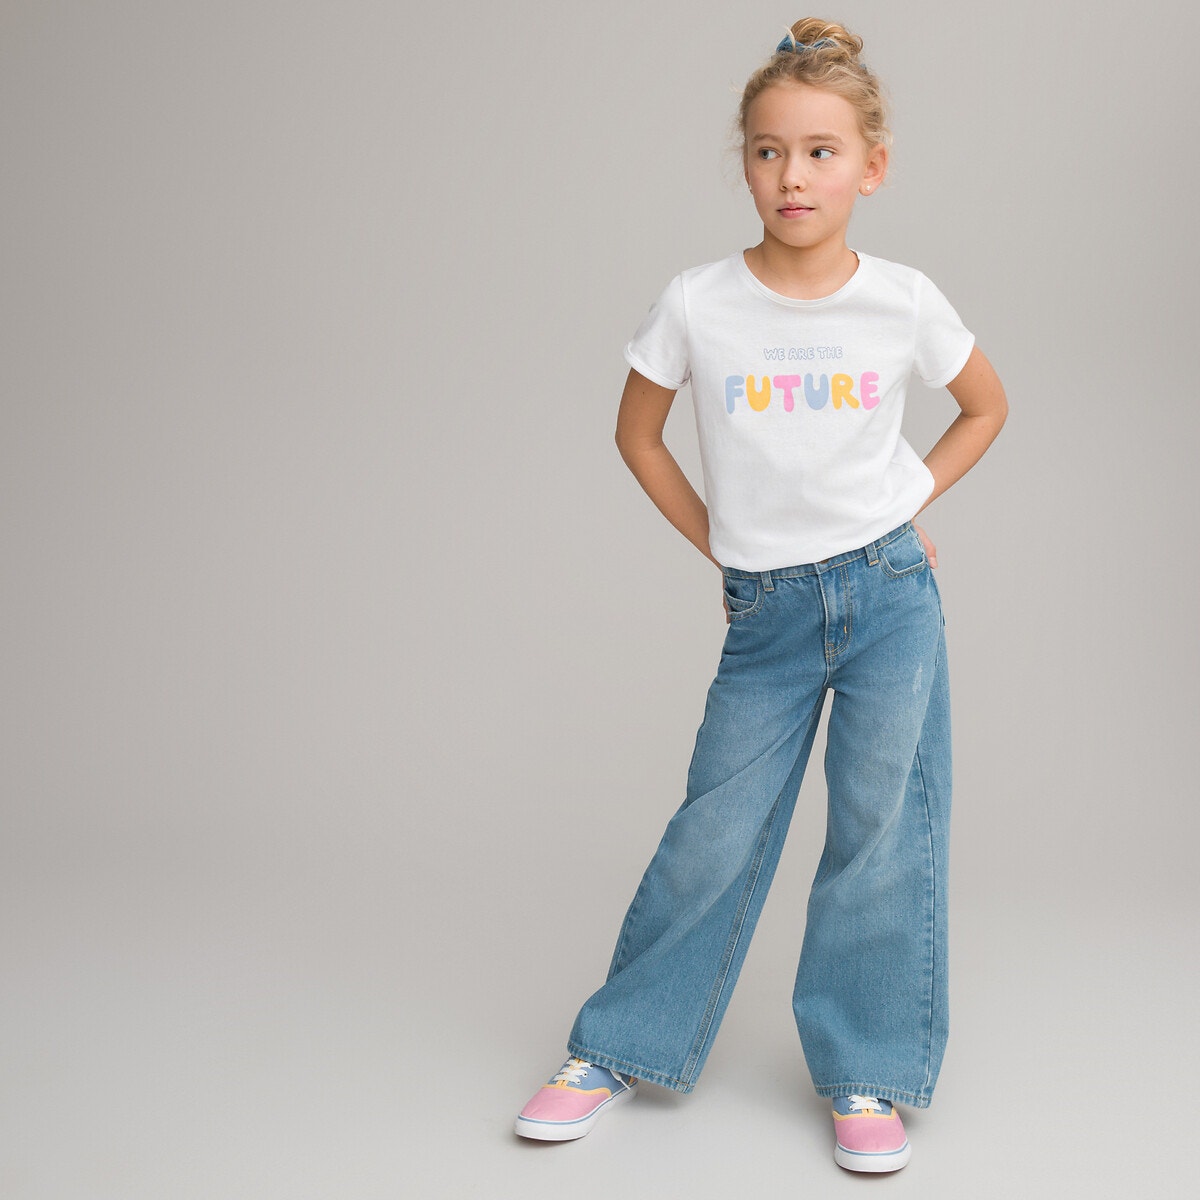 Μόδα > Παιδικά > Κορίτσι > T-shirt, αμάνικες μπλούζες > Κοντομάνικες μπλούζες Κοντομάνικο T-shirt με τυπωμένο μήνυμα μπροστά